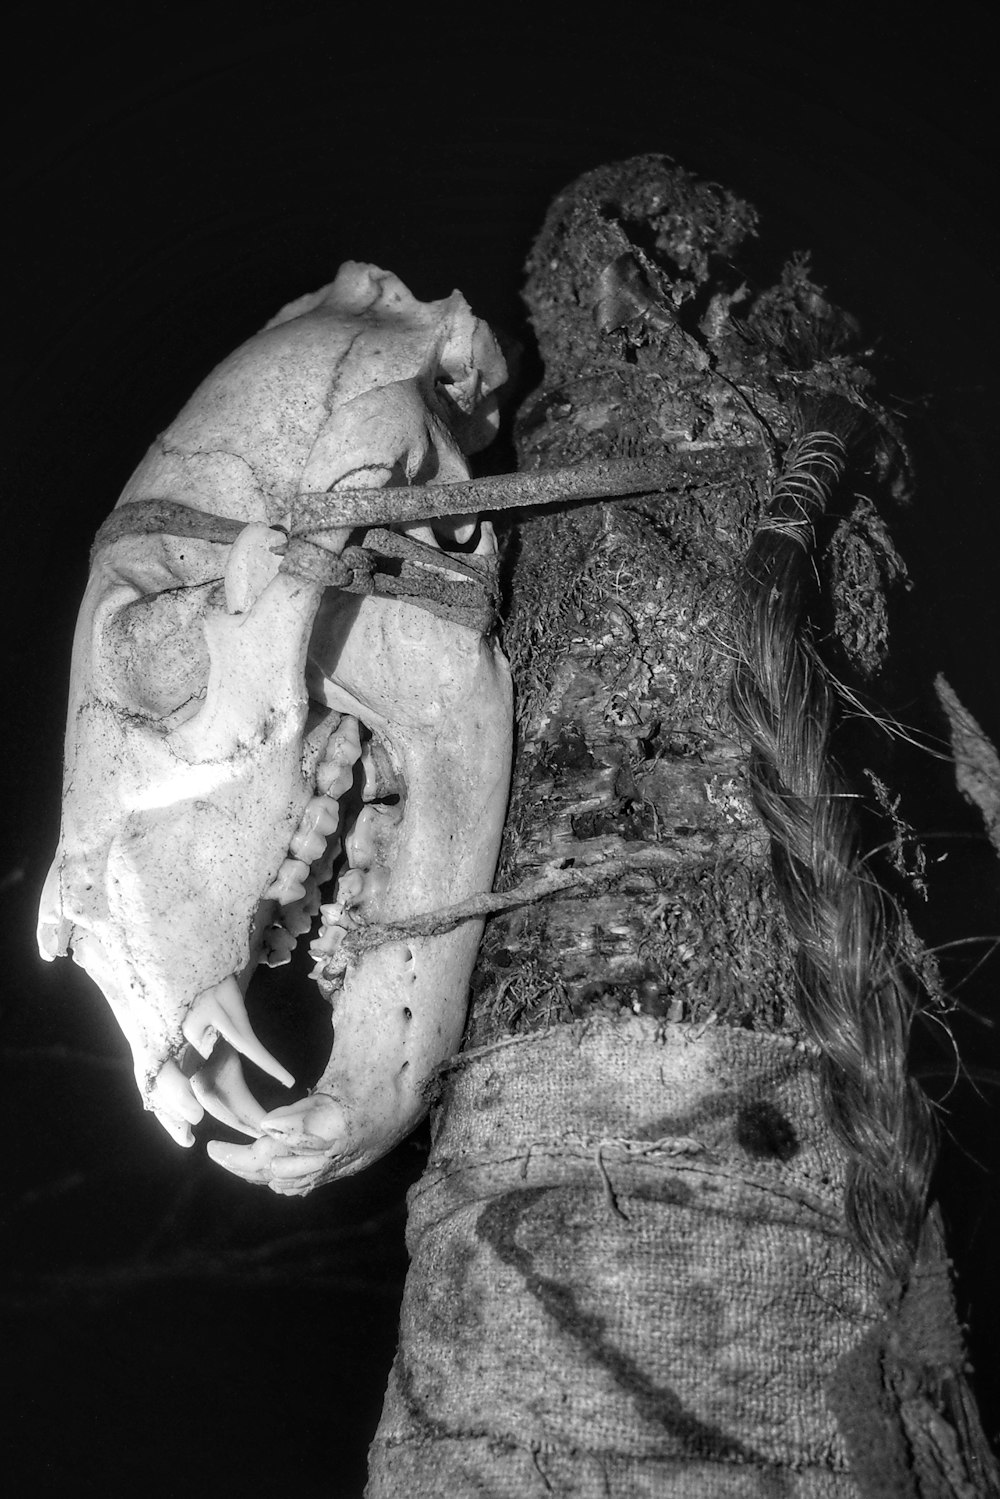 인간 두개골의 그레이스케일 사진